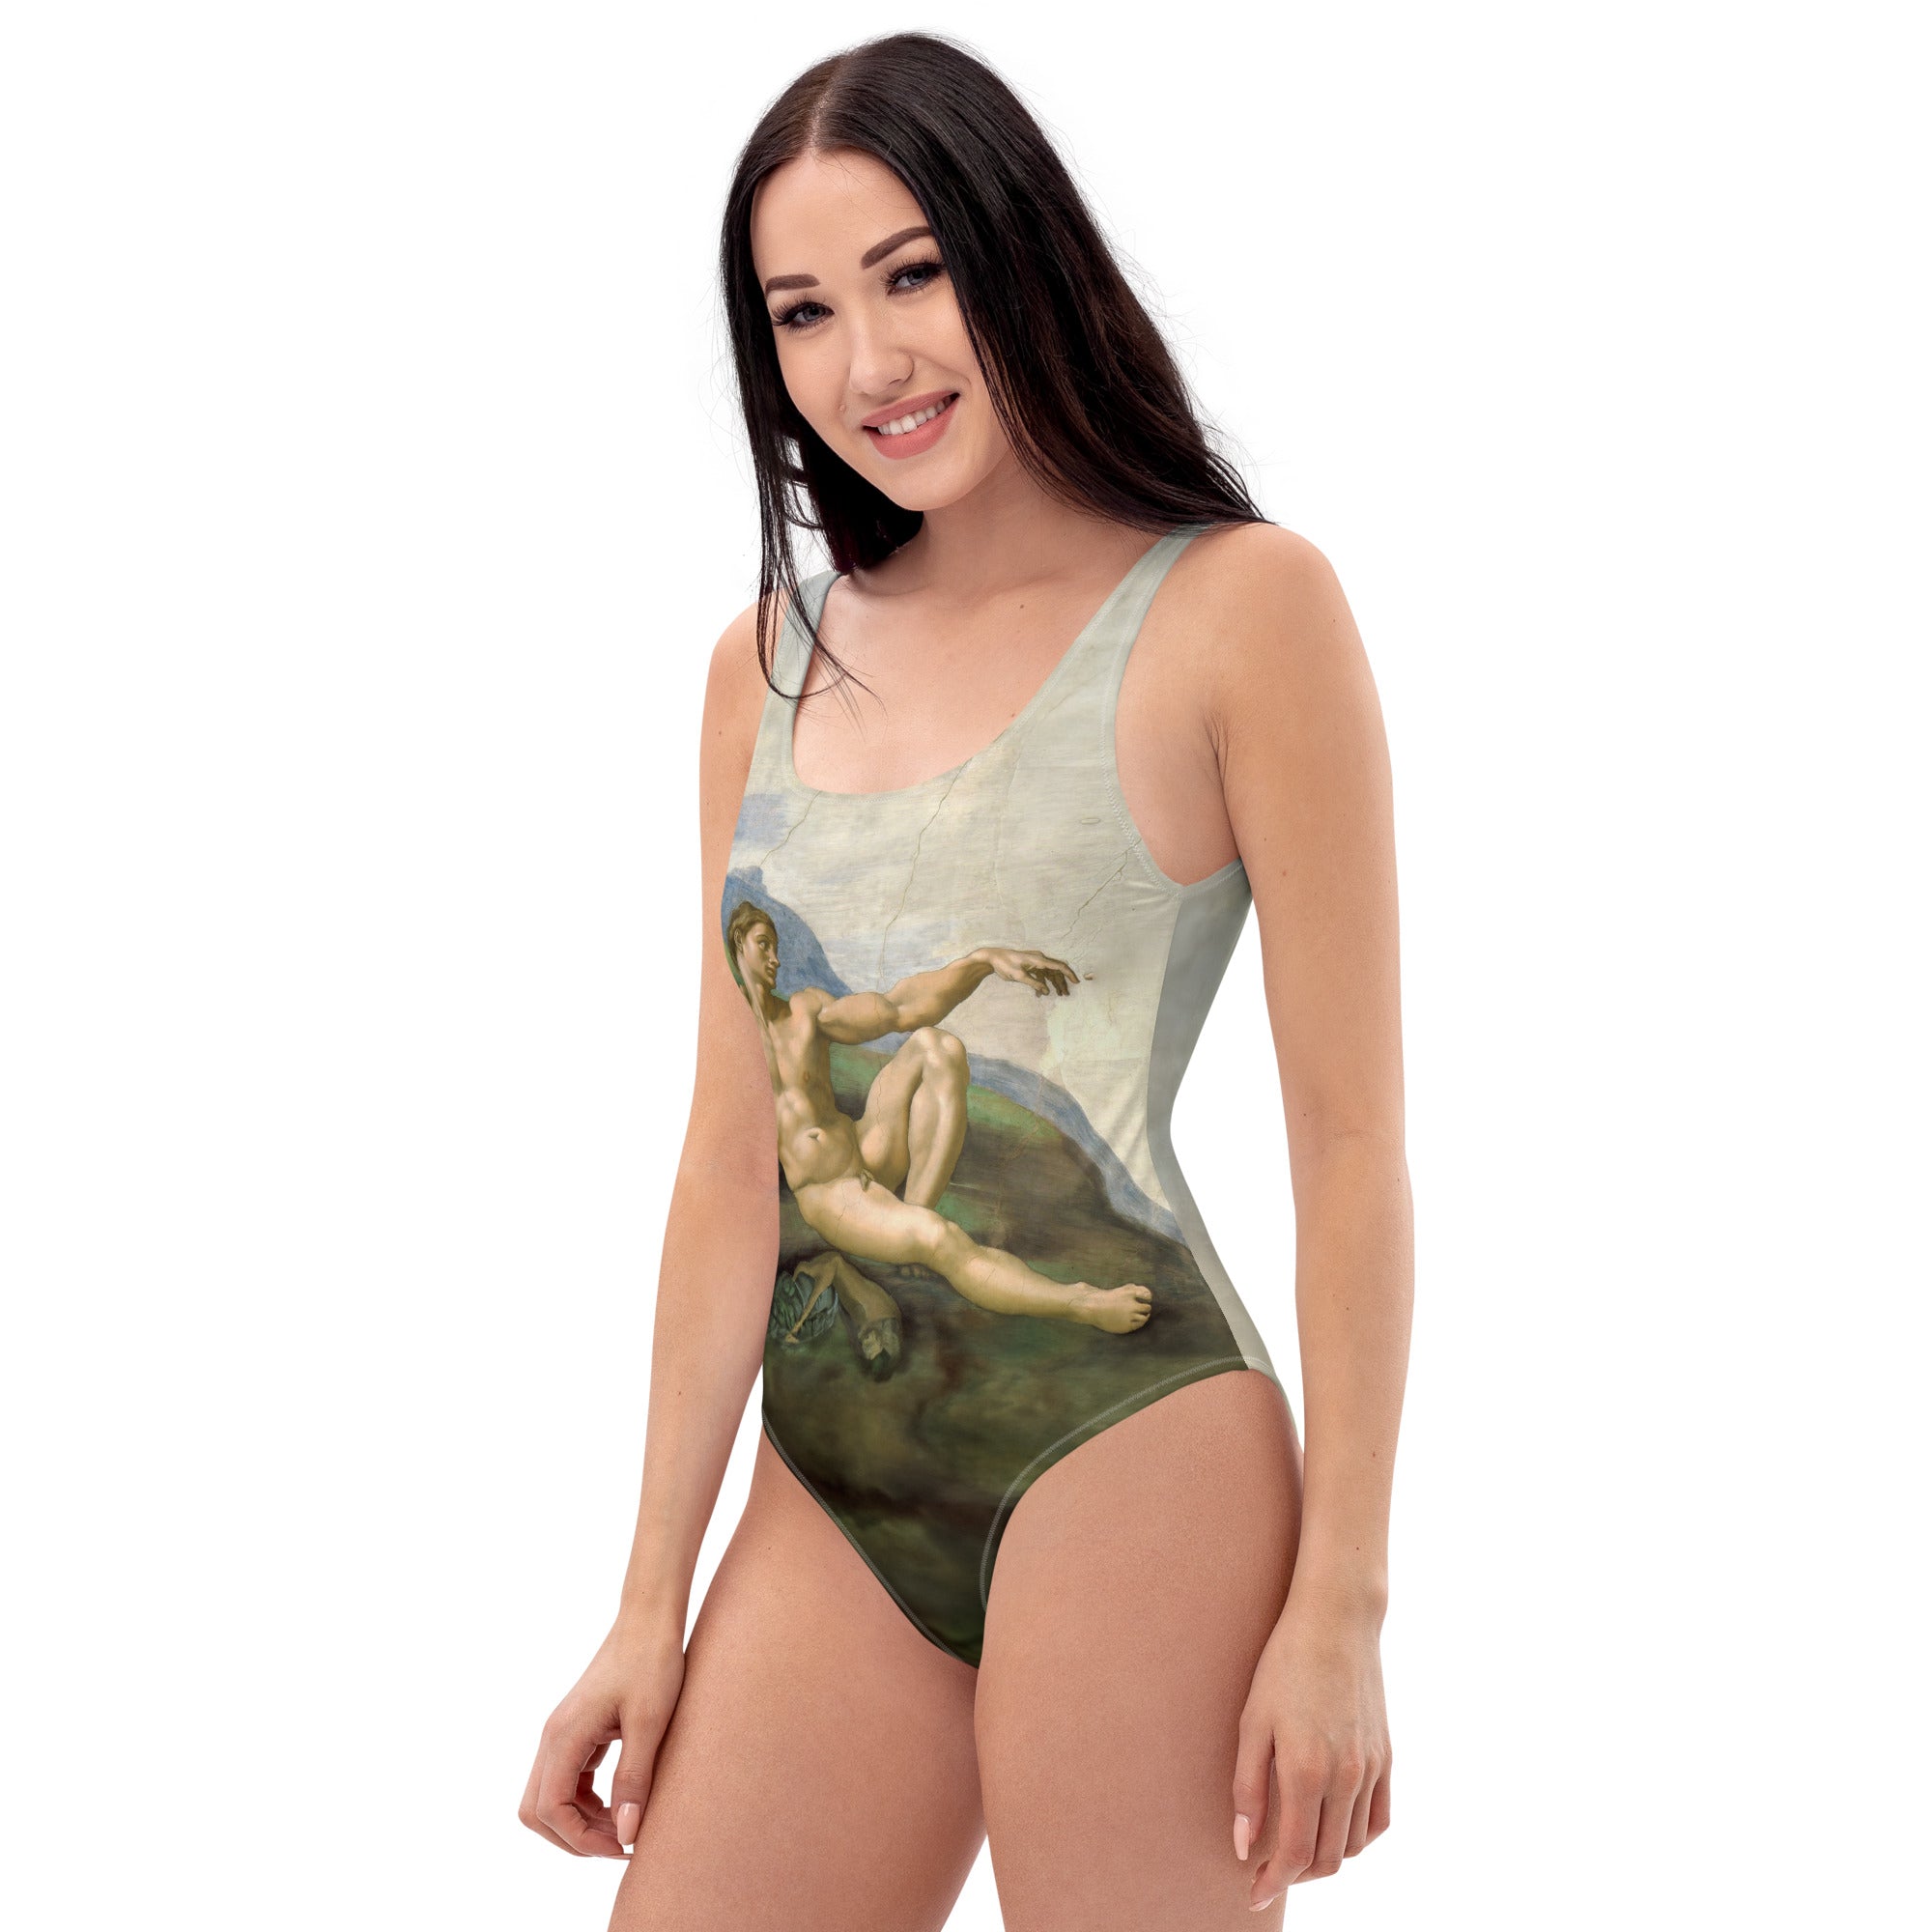 Badeanzug mit berühmtem Gemälde „Die Erschaffung Adams“ von Michelangelo | Einteiliger Badeanzug mit Premium-Kunstmotiv